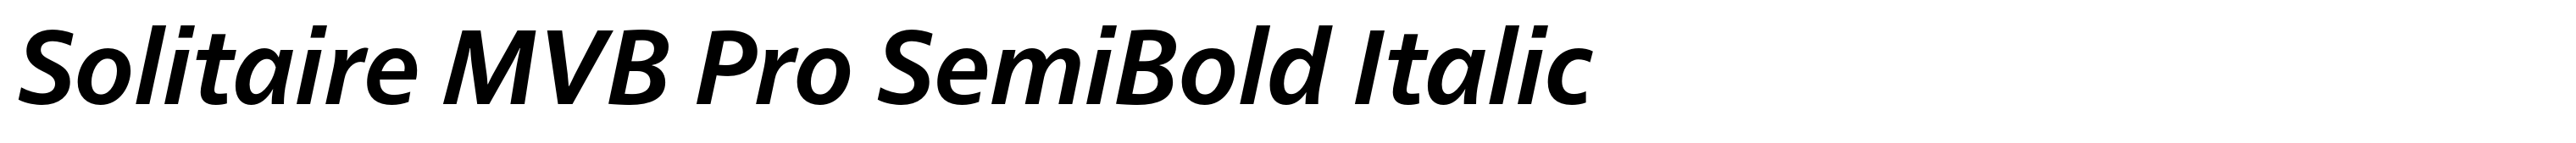 Solitaire MVB Pro SemiBold Italic